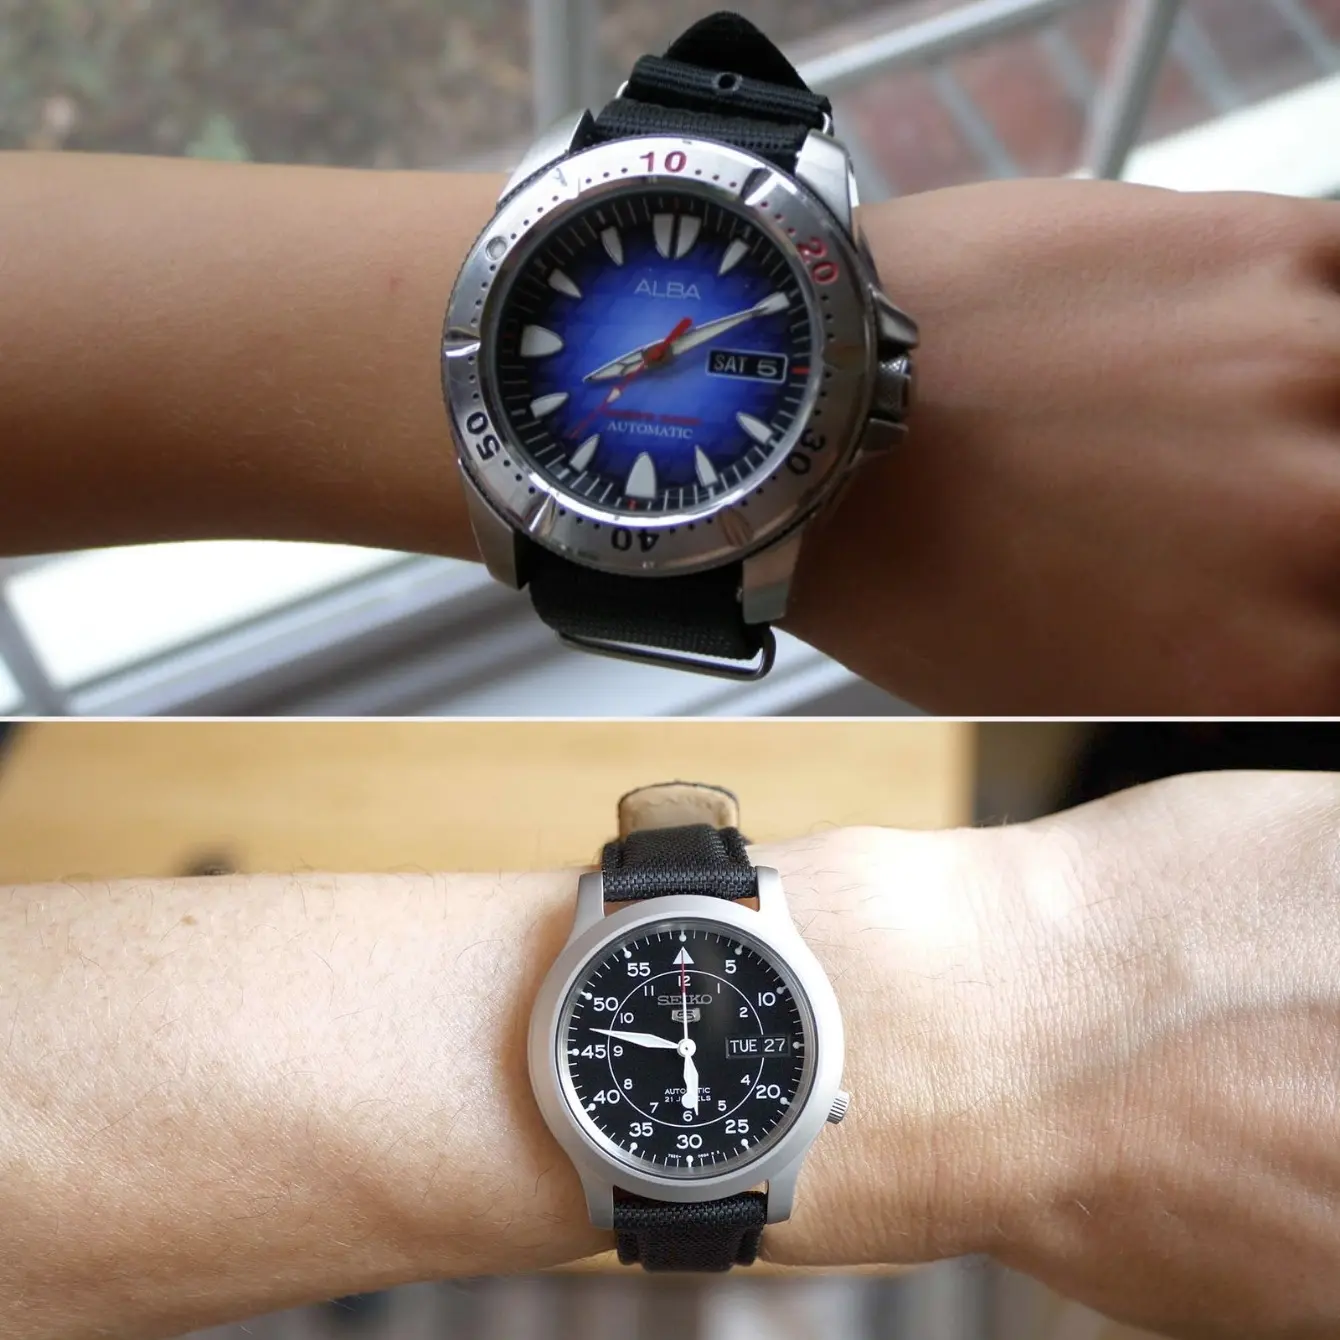 Big watch vs small watch